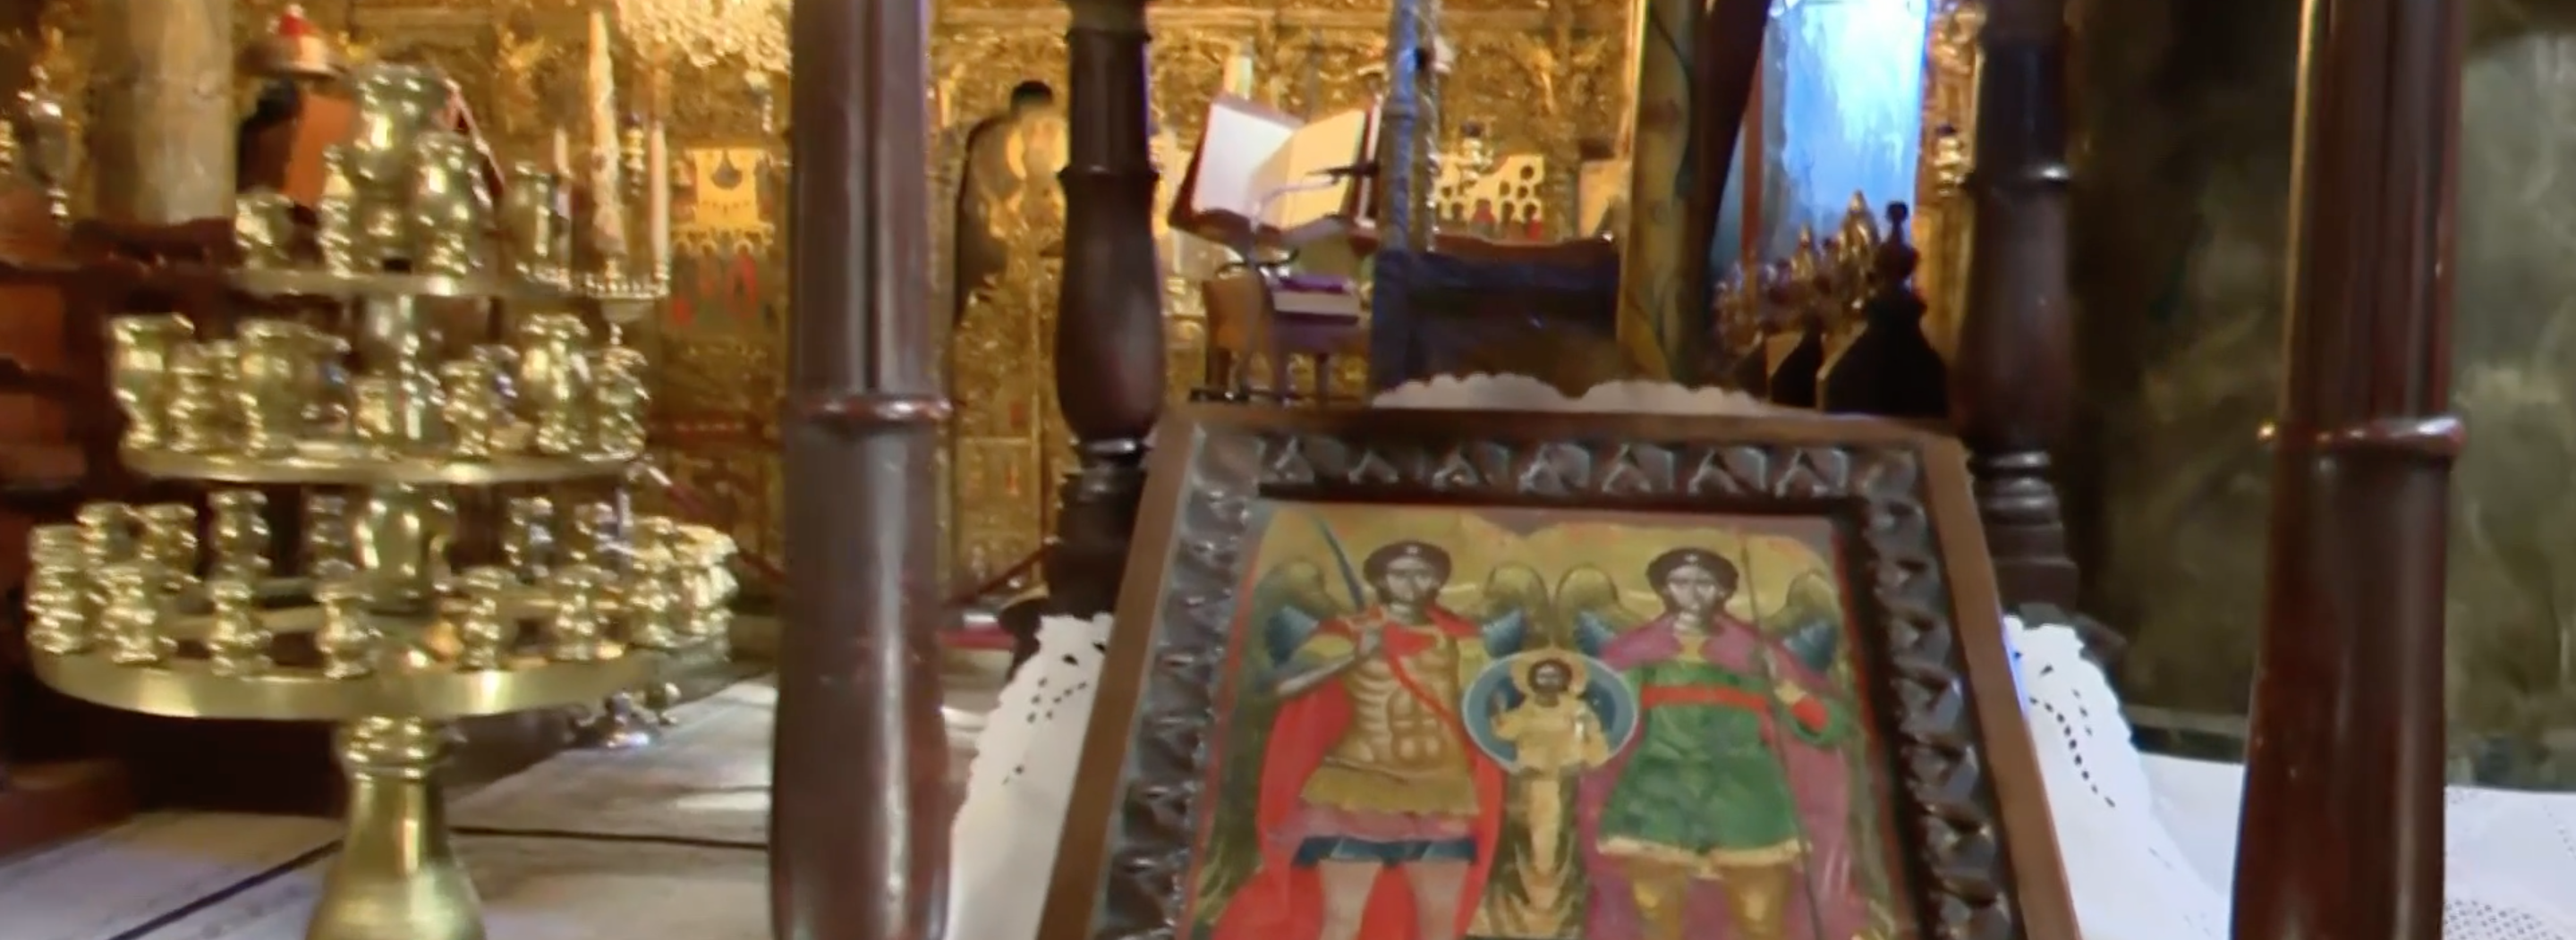 Μηλιές Πηλίου- Ο ναός των Παμμεγίστων Ταξιαρχών: Το κόσμημα της πηλιορείτικης θρησκευτικής  παράδοσης με τις πολλές ιδιαιτερότητες